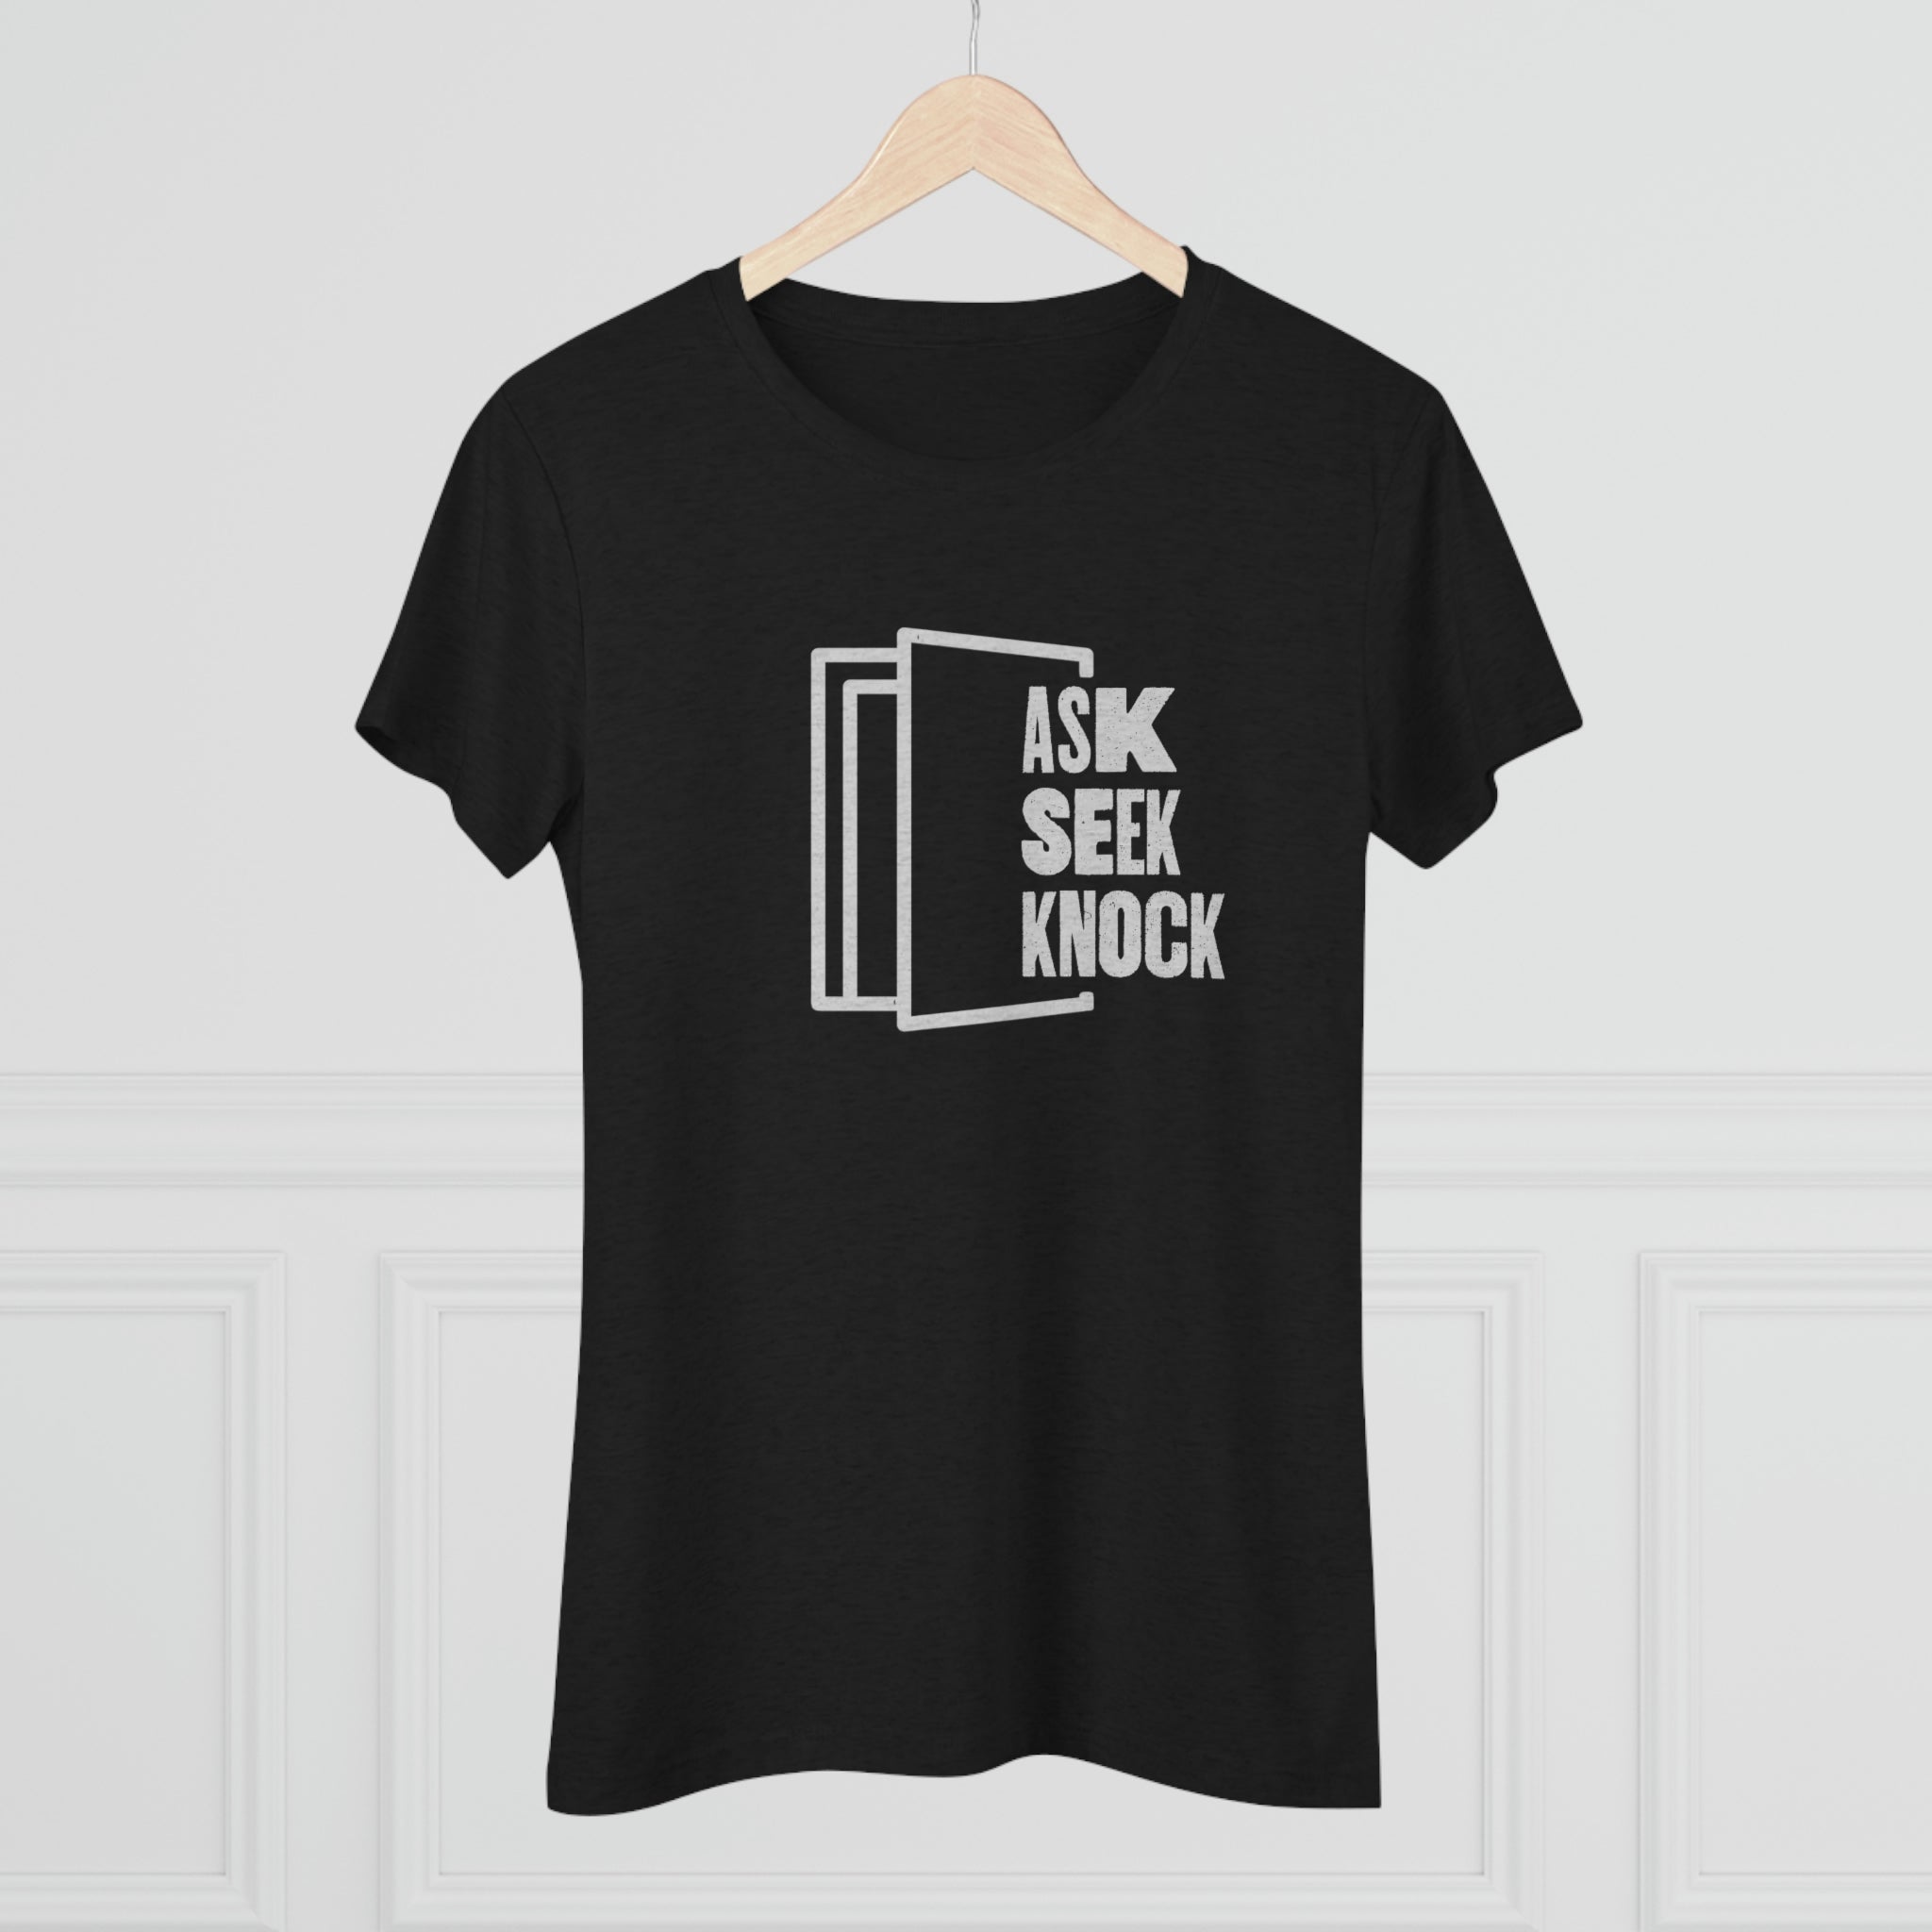 Women's Ask. Seek. Knock Premium T-shirt